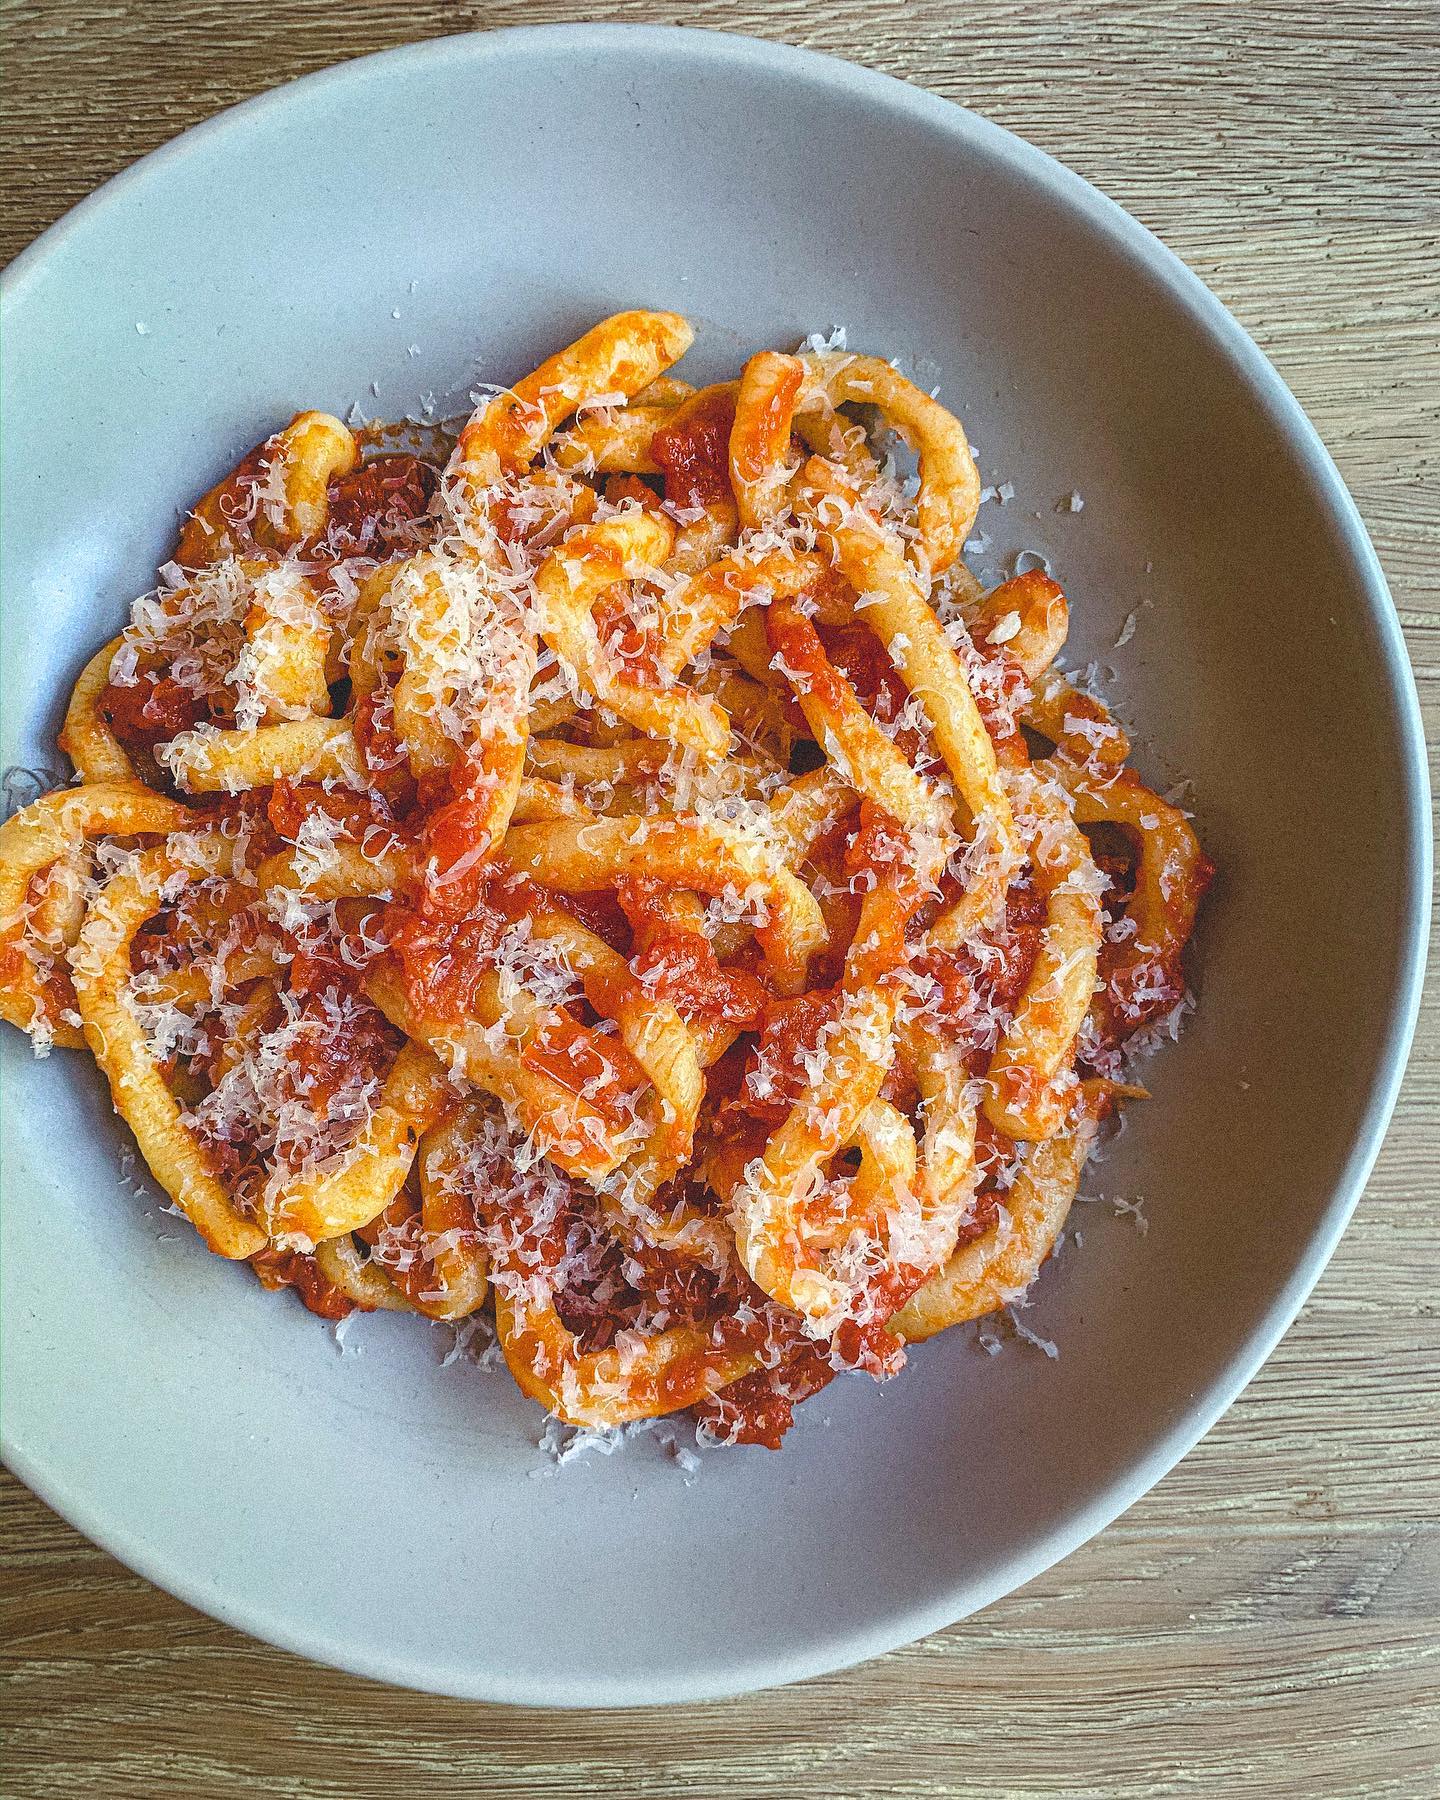 Pici Pasta with All'aglione Sauce